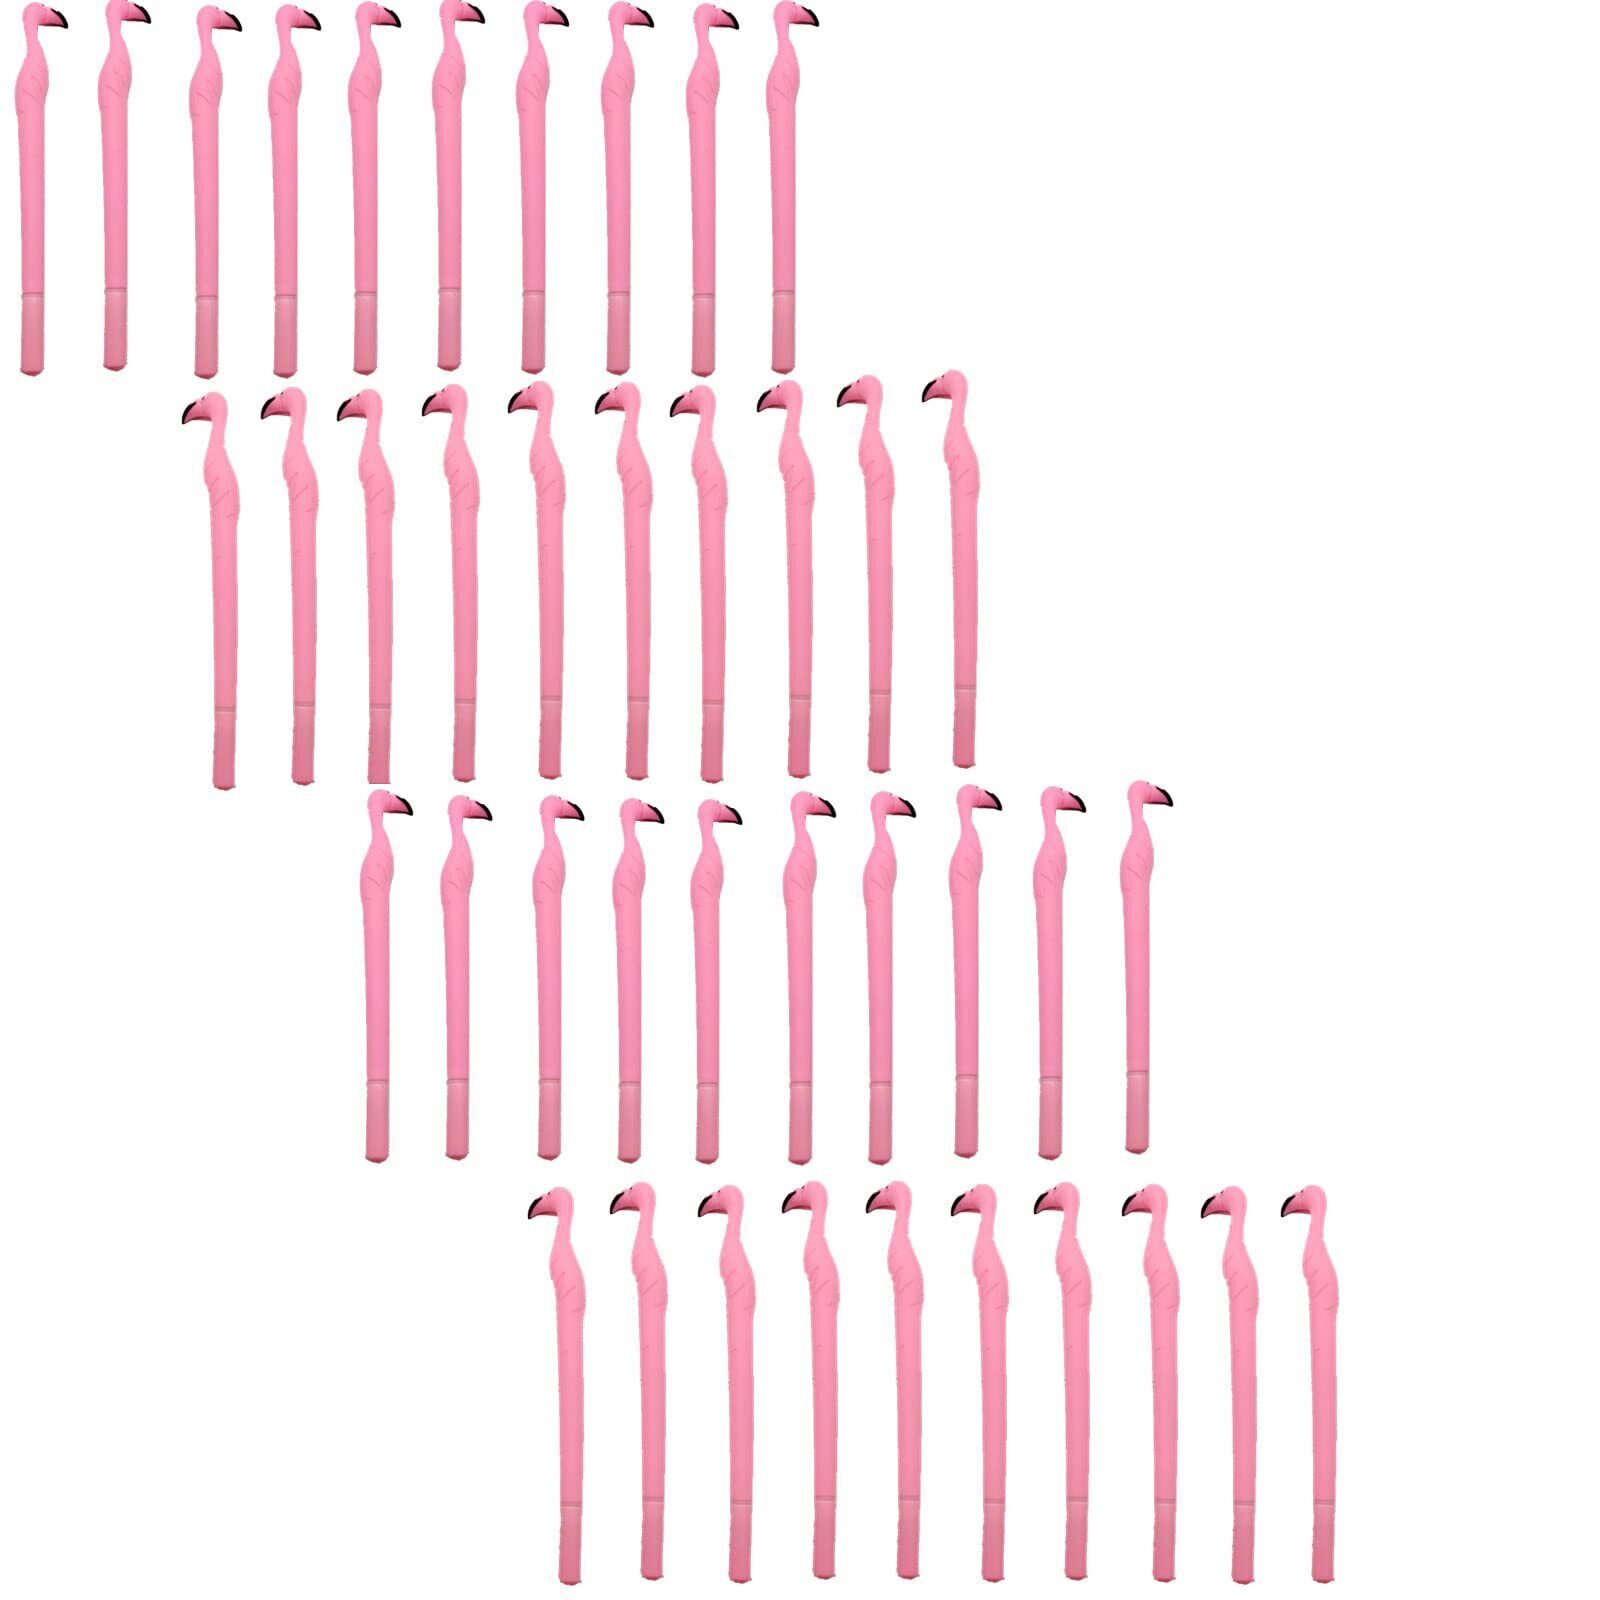 MIAO YUAN 40 PCS Cute Pink Flamingo Gel Pens Gift for Child Women Coworkers H...